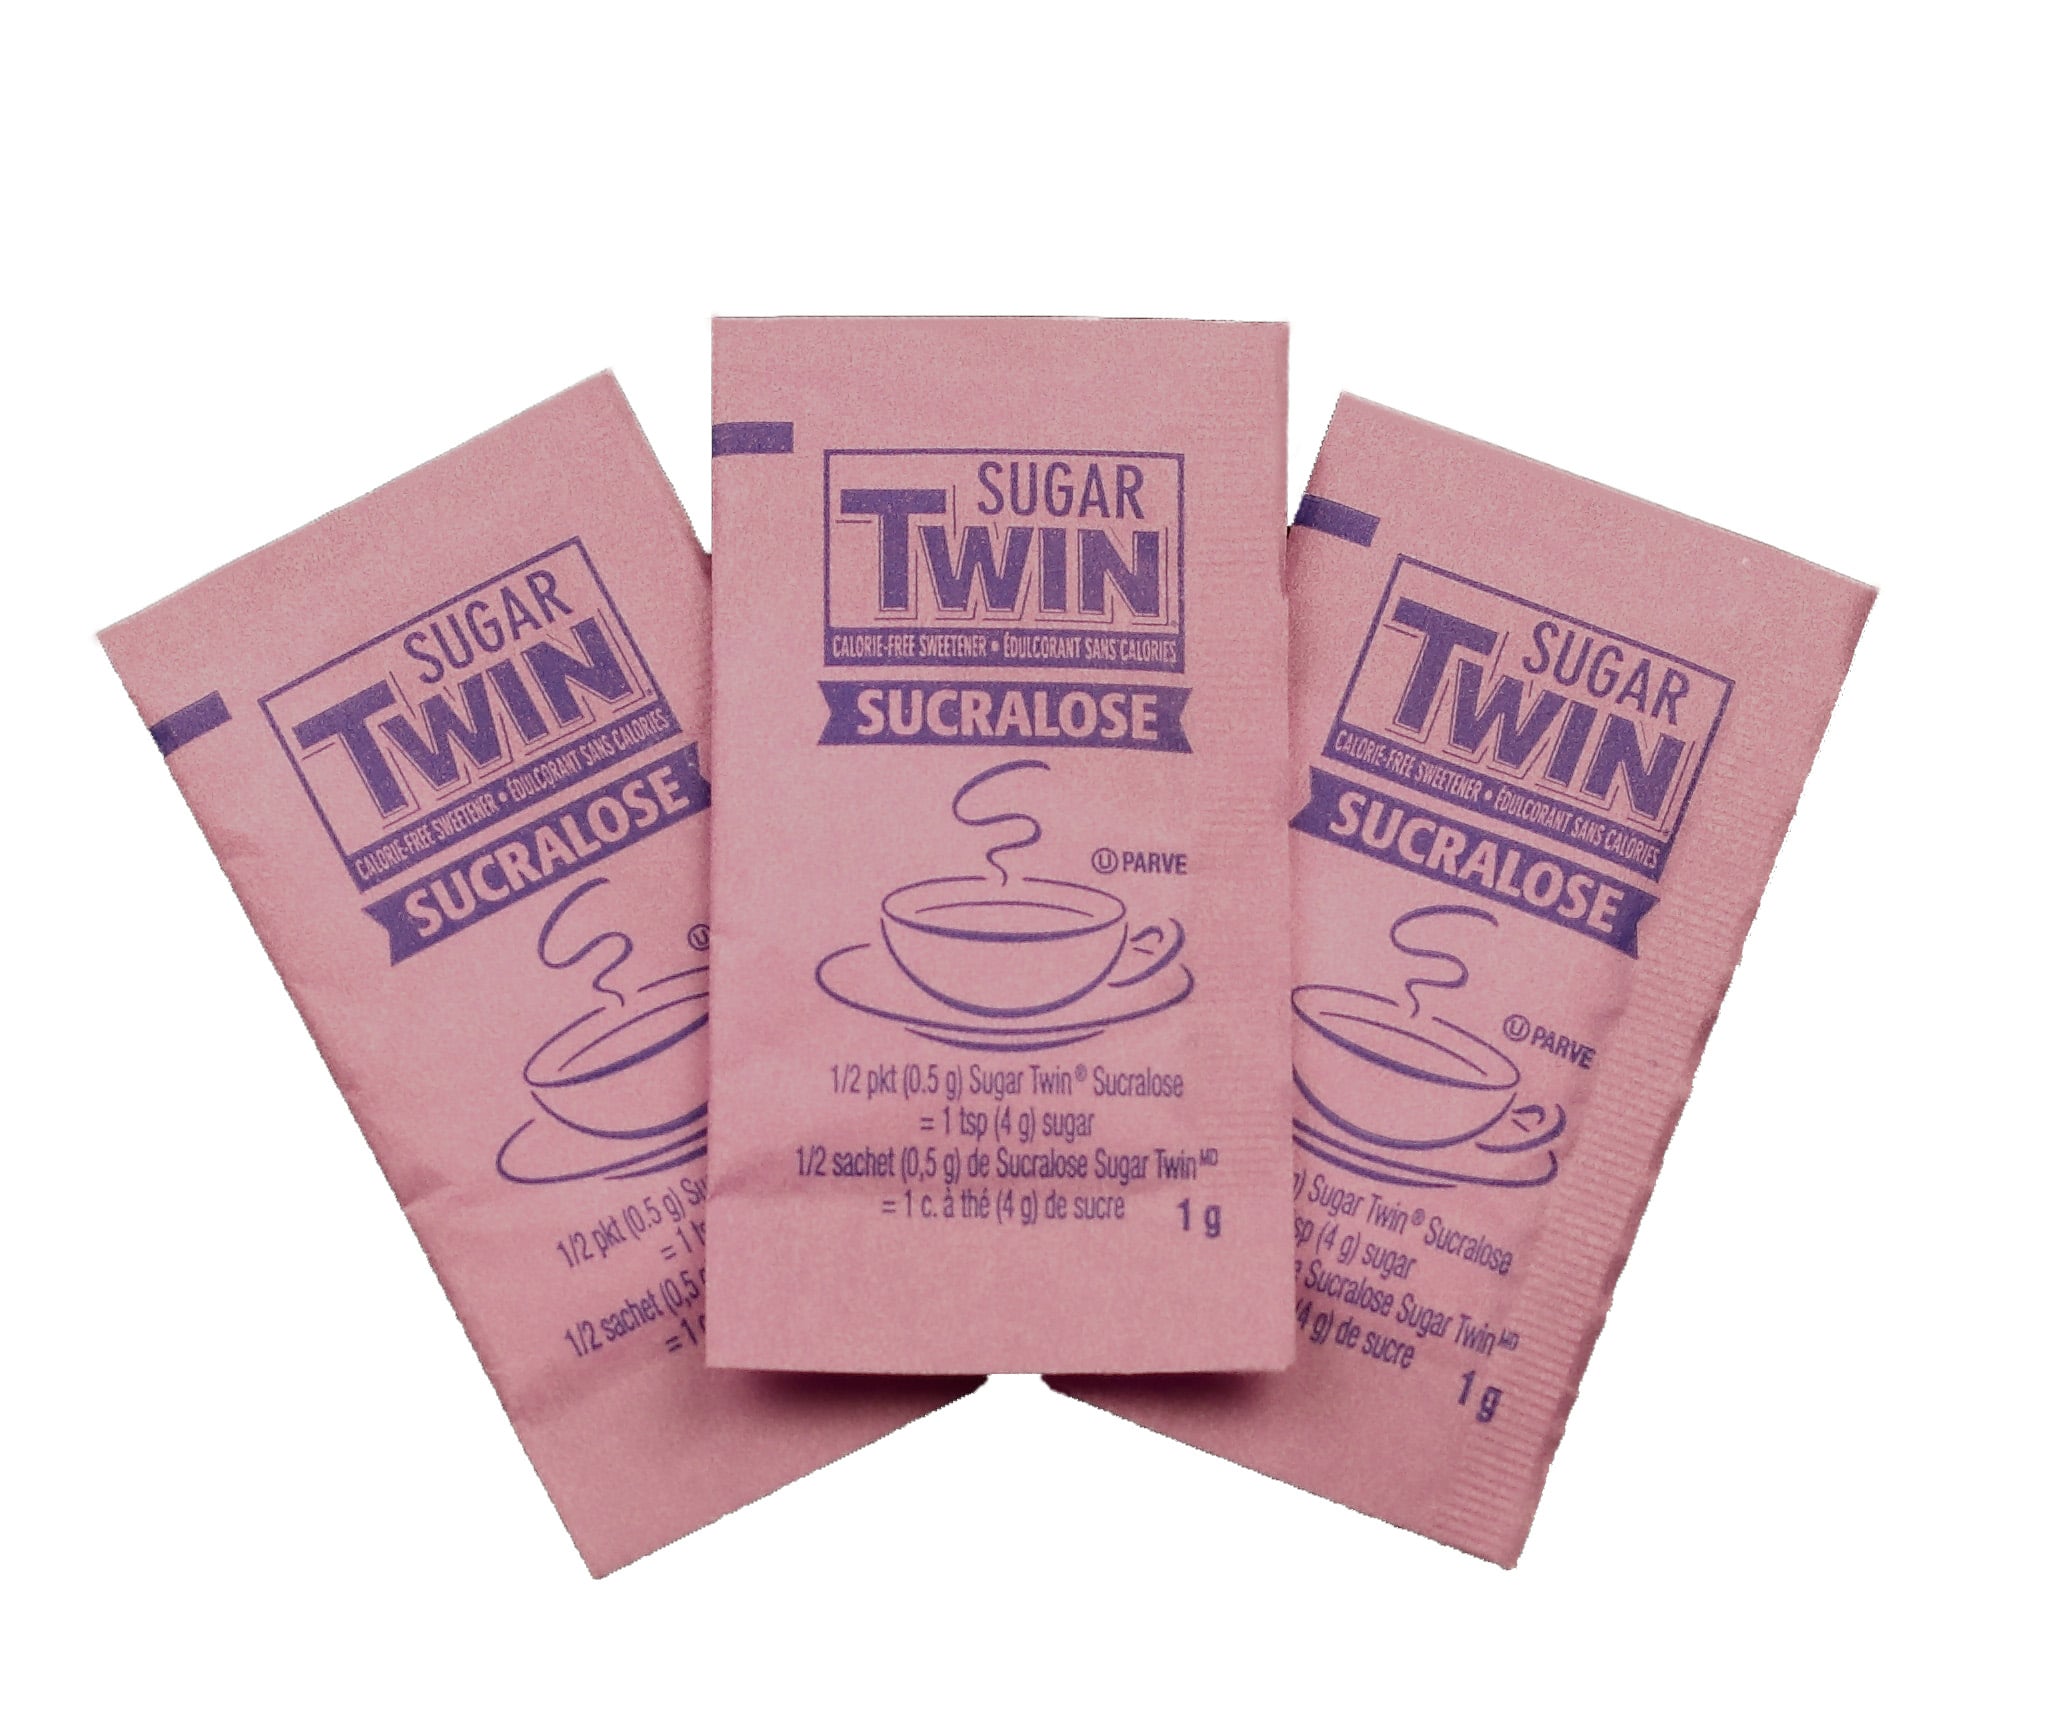 Sugar Twin Sucralose